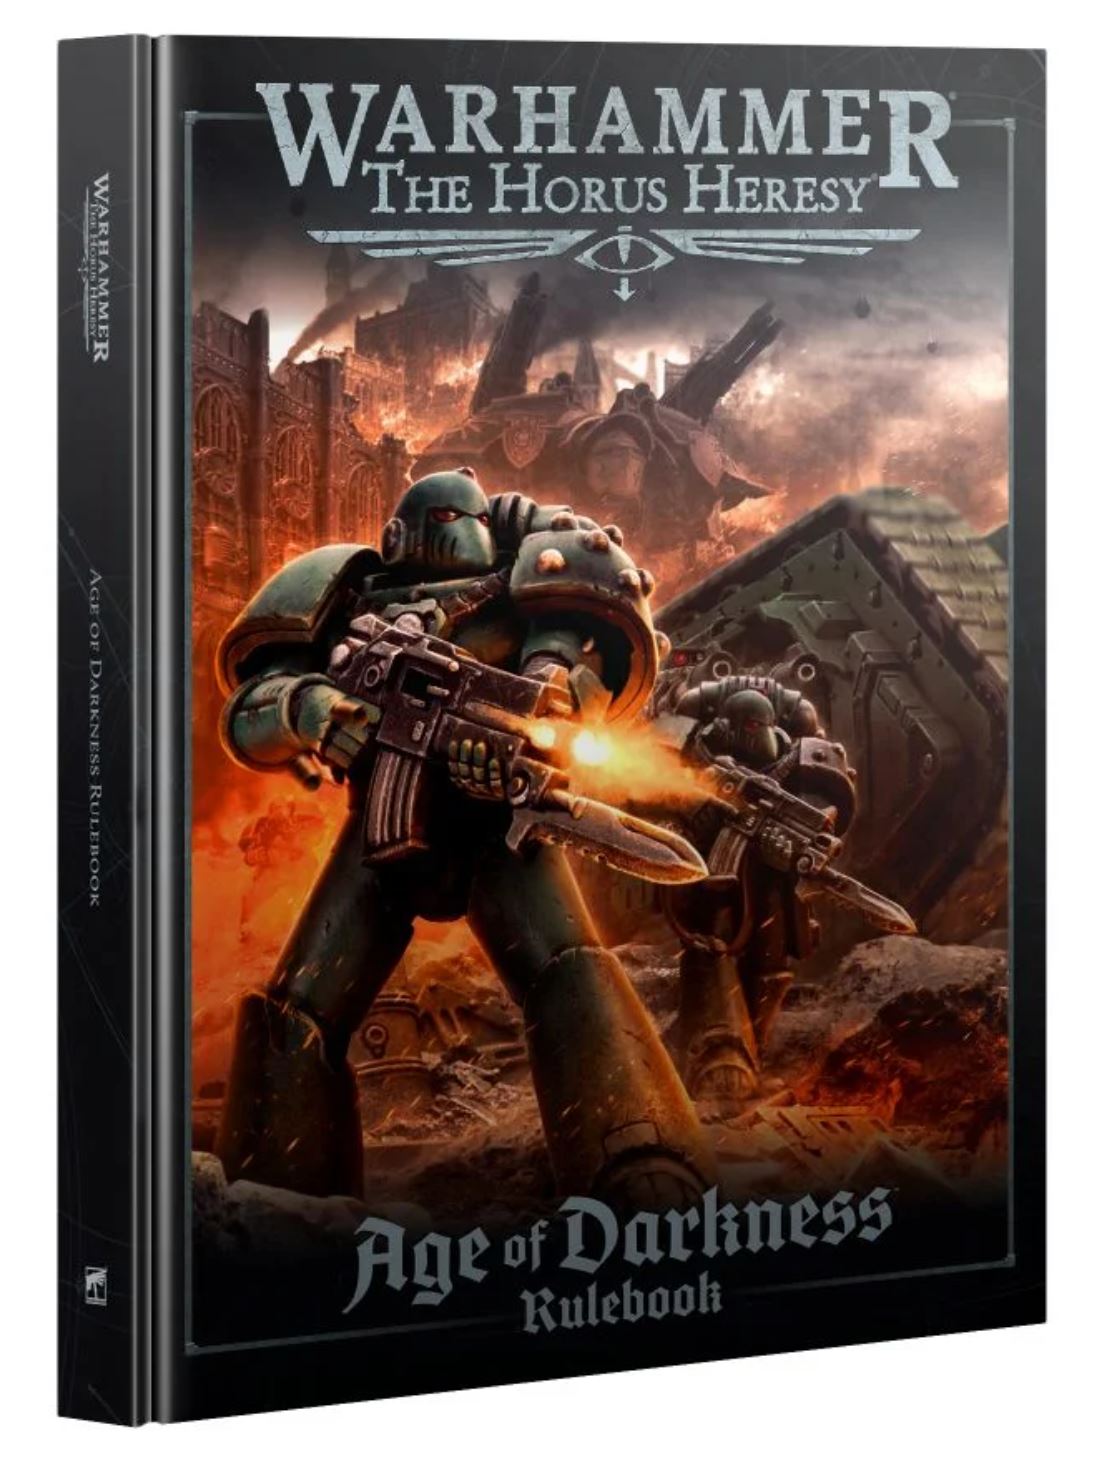 Horus Heresy - Age of Darkness Box Set